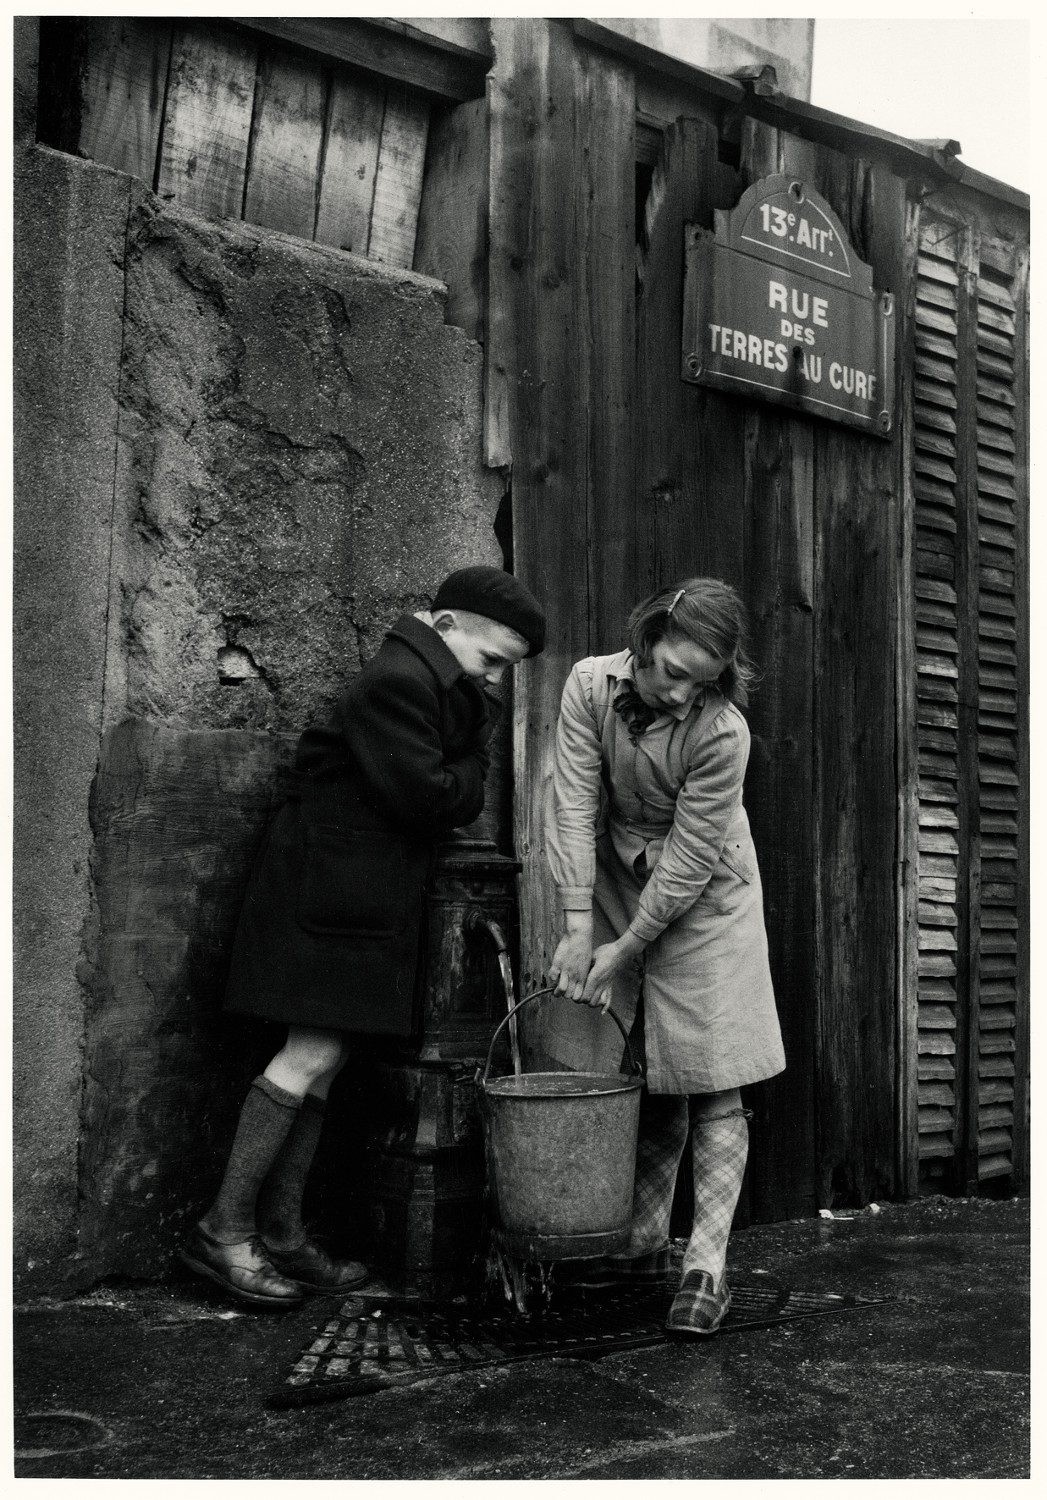 Дети берут воду из колонки, Париж, 1954. Фотограф Сабина Вайс